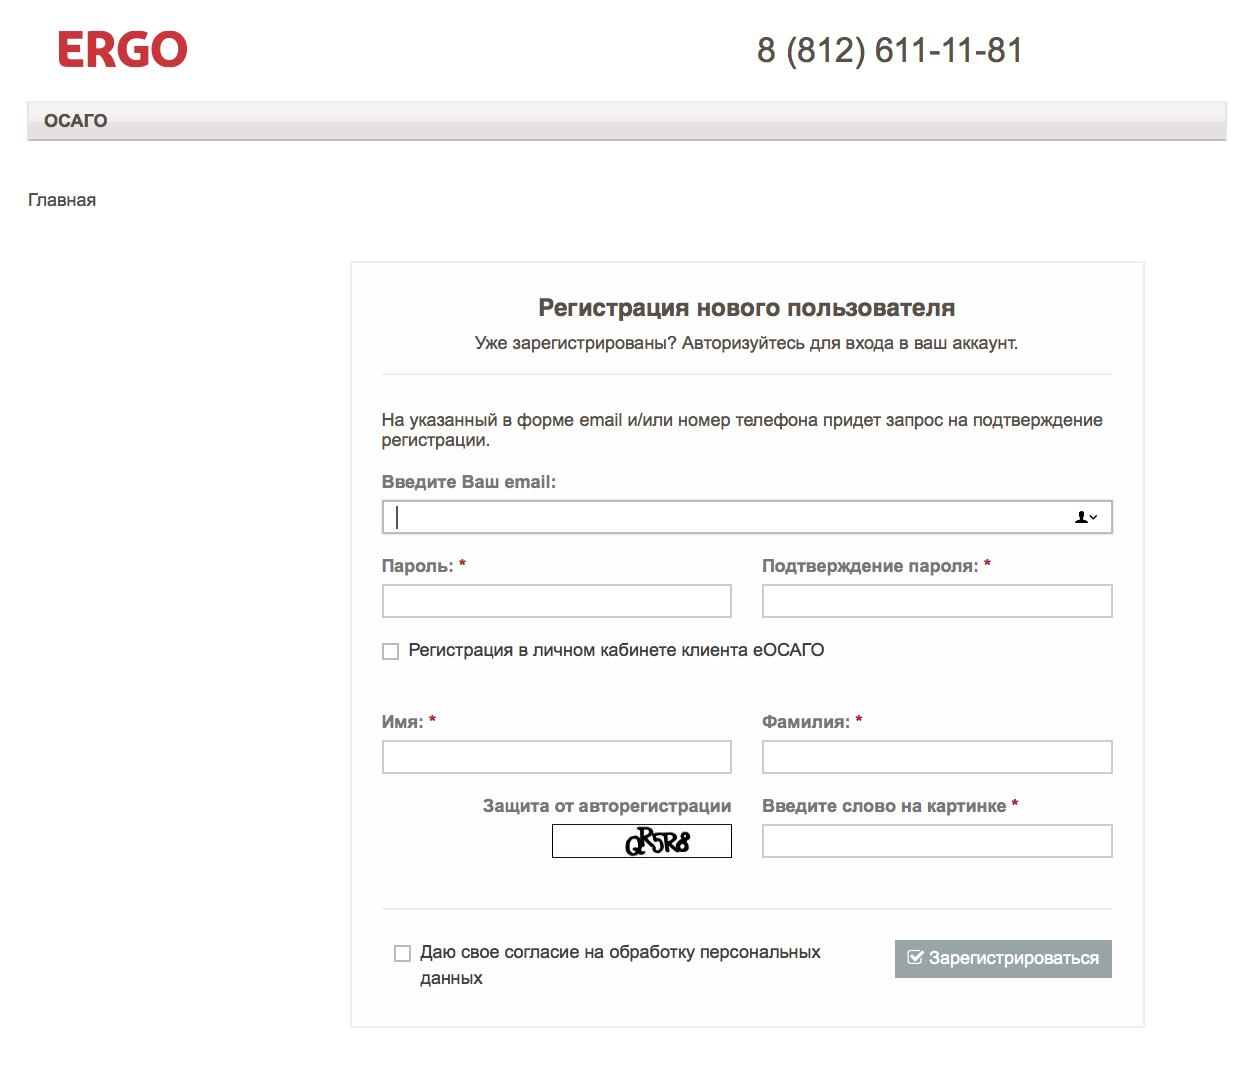 Регистрация нового пользователя сайт. ТСН Эрго. Эрго с днем рождения от страховой компании. Эрго ГОСТ энд Палс.